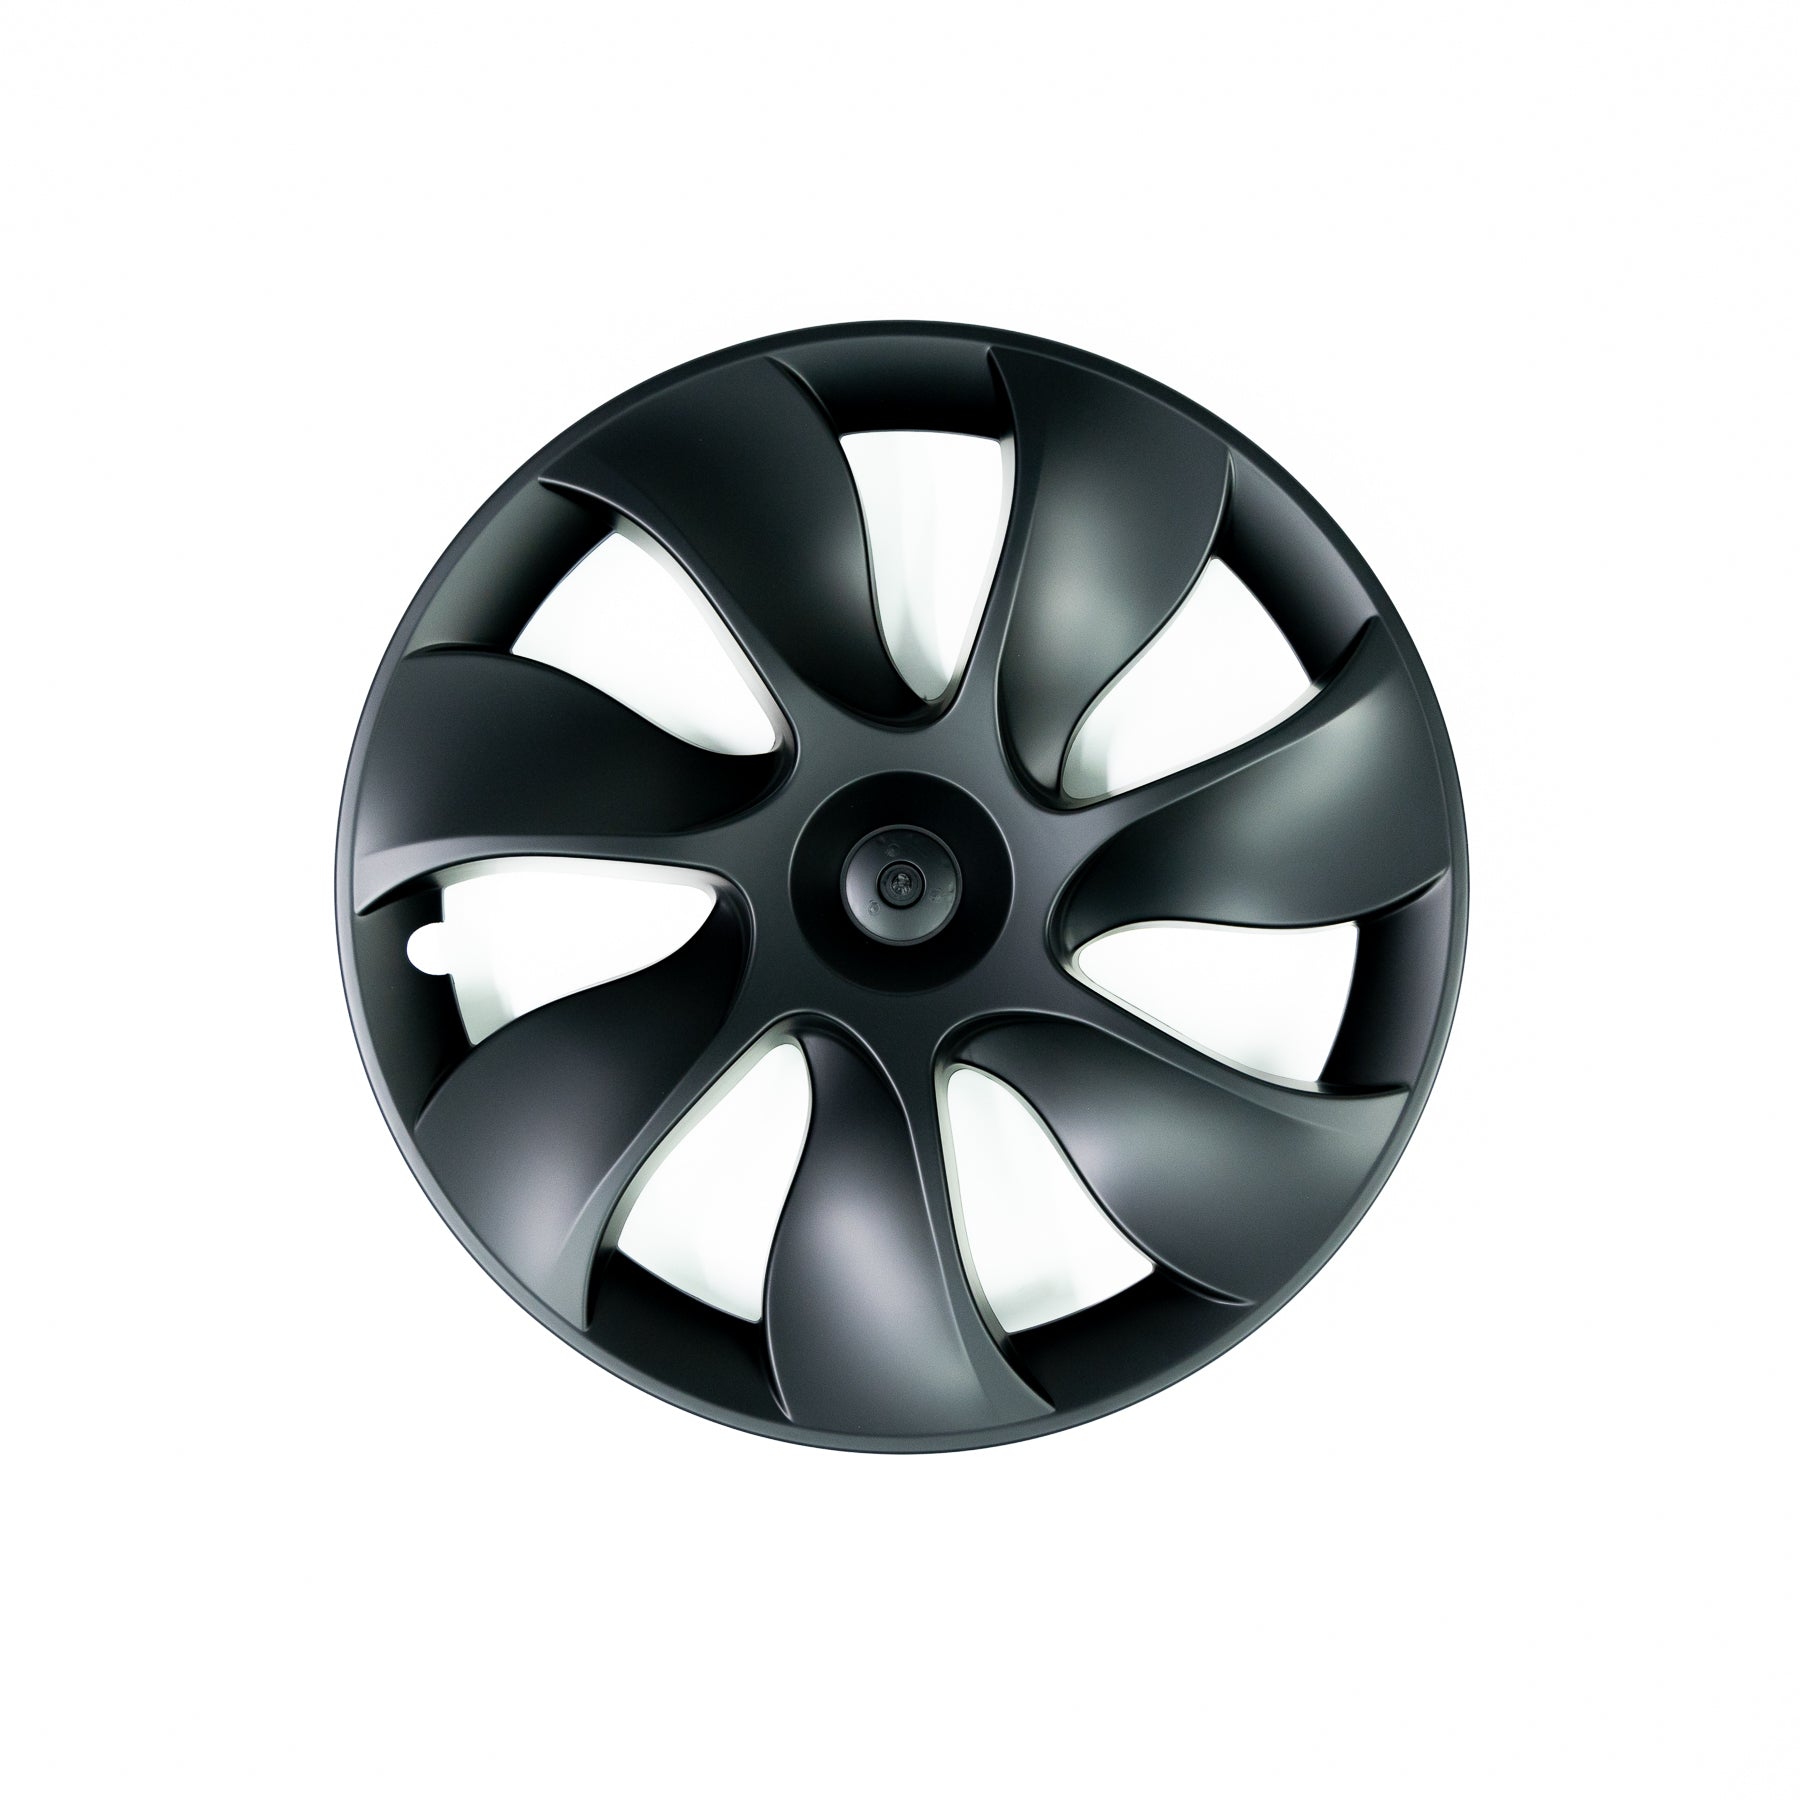 19" Whirlwind-Style Wheel Covers for Tesla Model Y  - Eevify